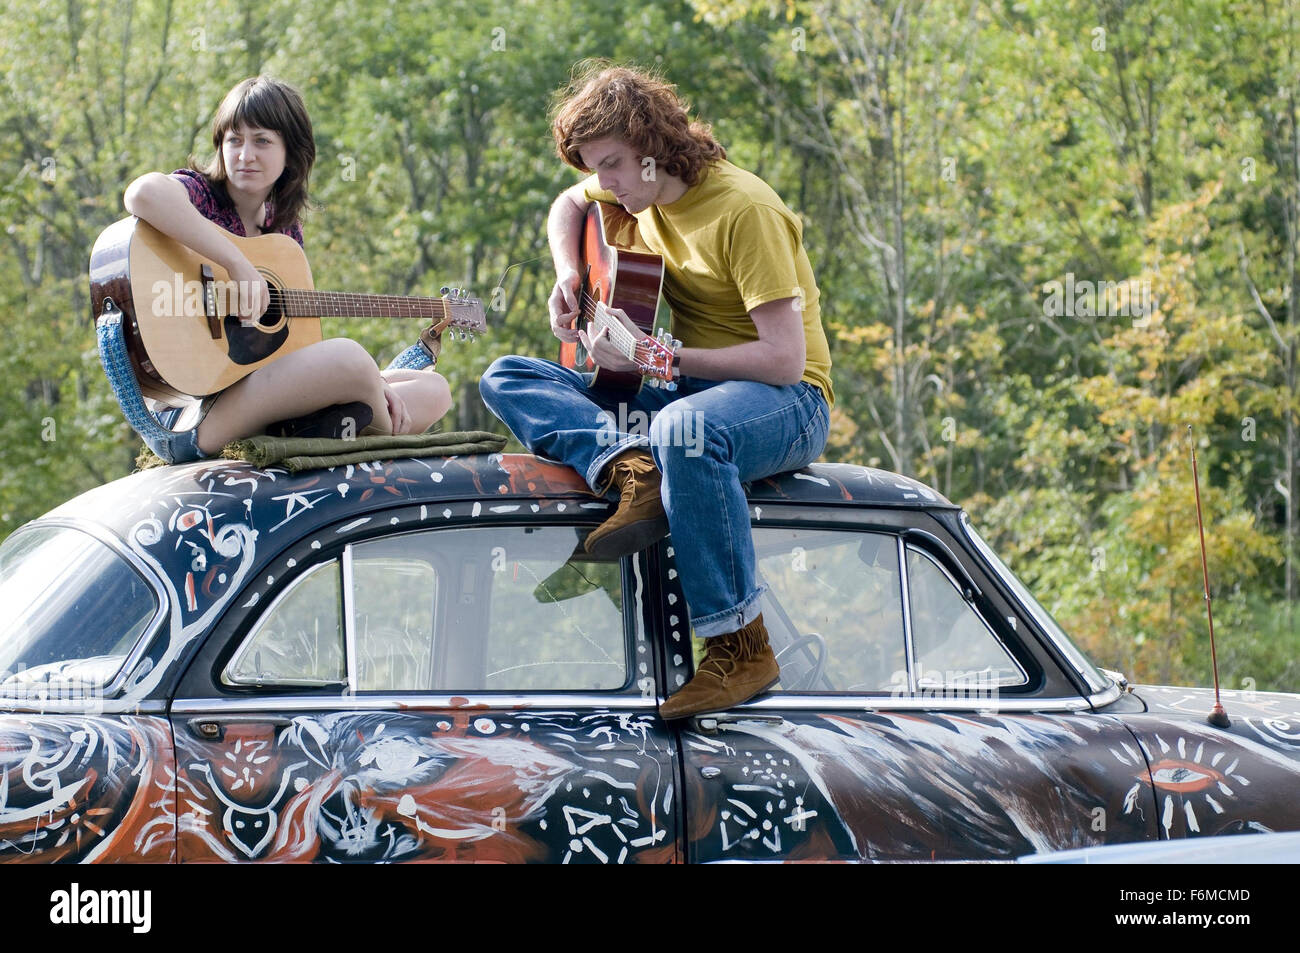 Erscheinungsdatum: 28. August 2009. FILMTITEL: Taking Woodstock. STUDIO: Focus Features. PLOT: Ein Mann, der arbeitet im elterlichen Motel in den Catskills versehentlich setzt in Bewegung das Definieren von Generation Konzert im Sommer 1969. IM BILD:. Stockfoto